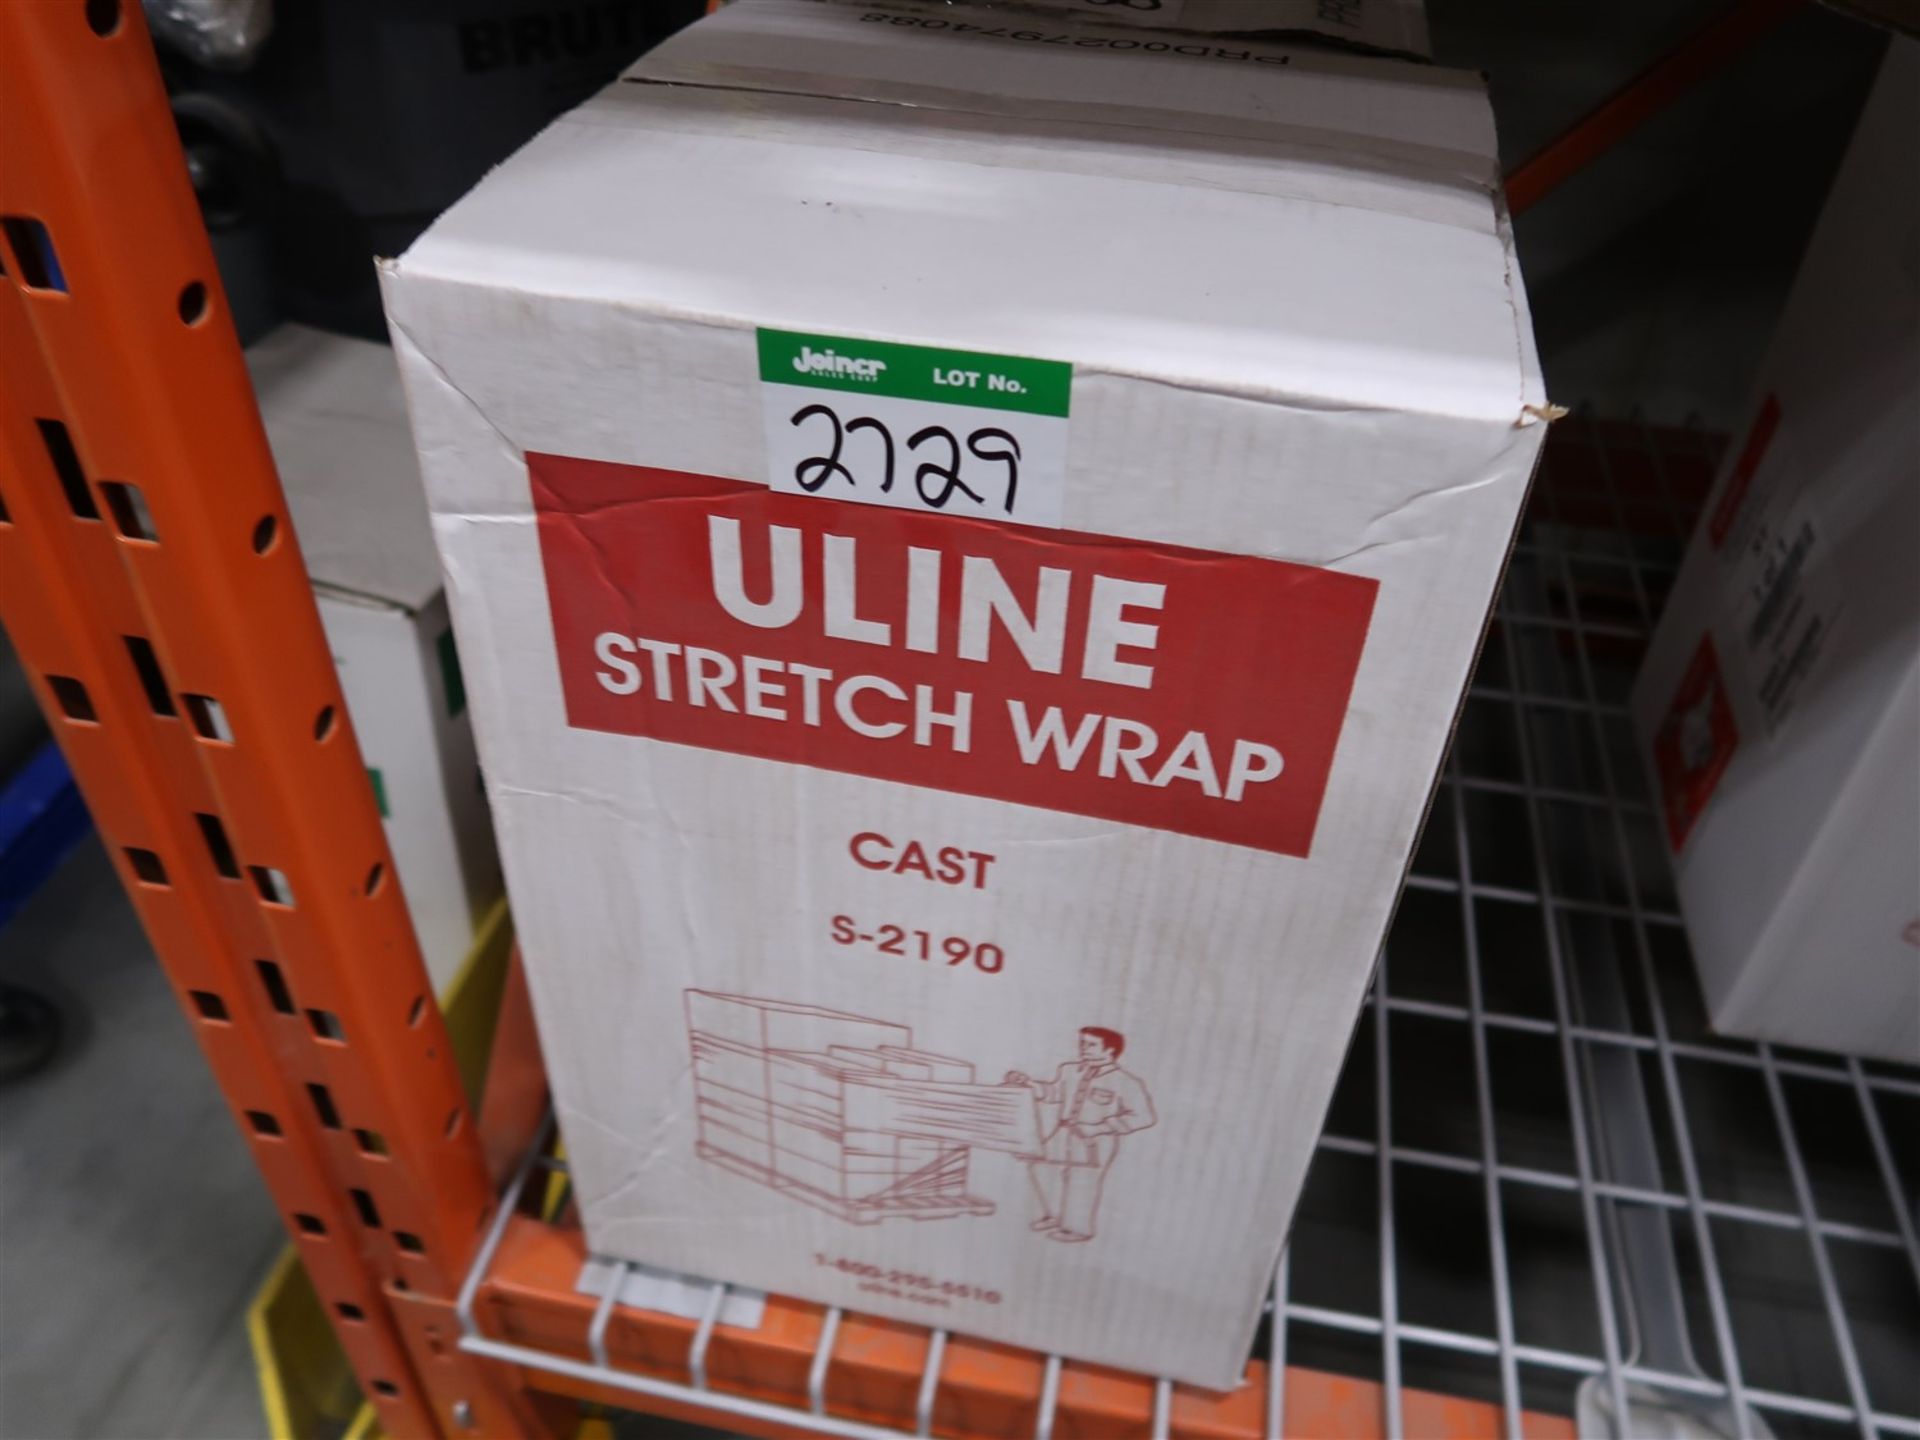 BOX OF ULINE STRETCH WRAP S-2190